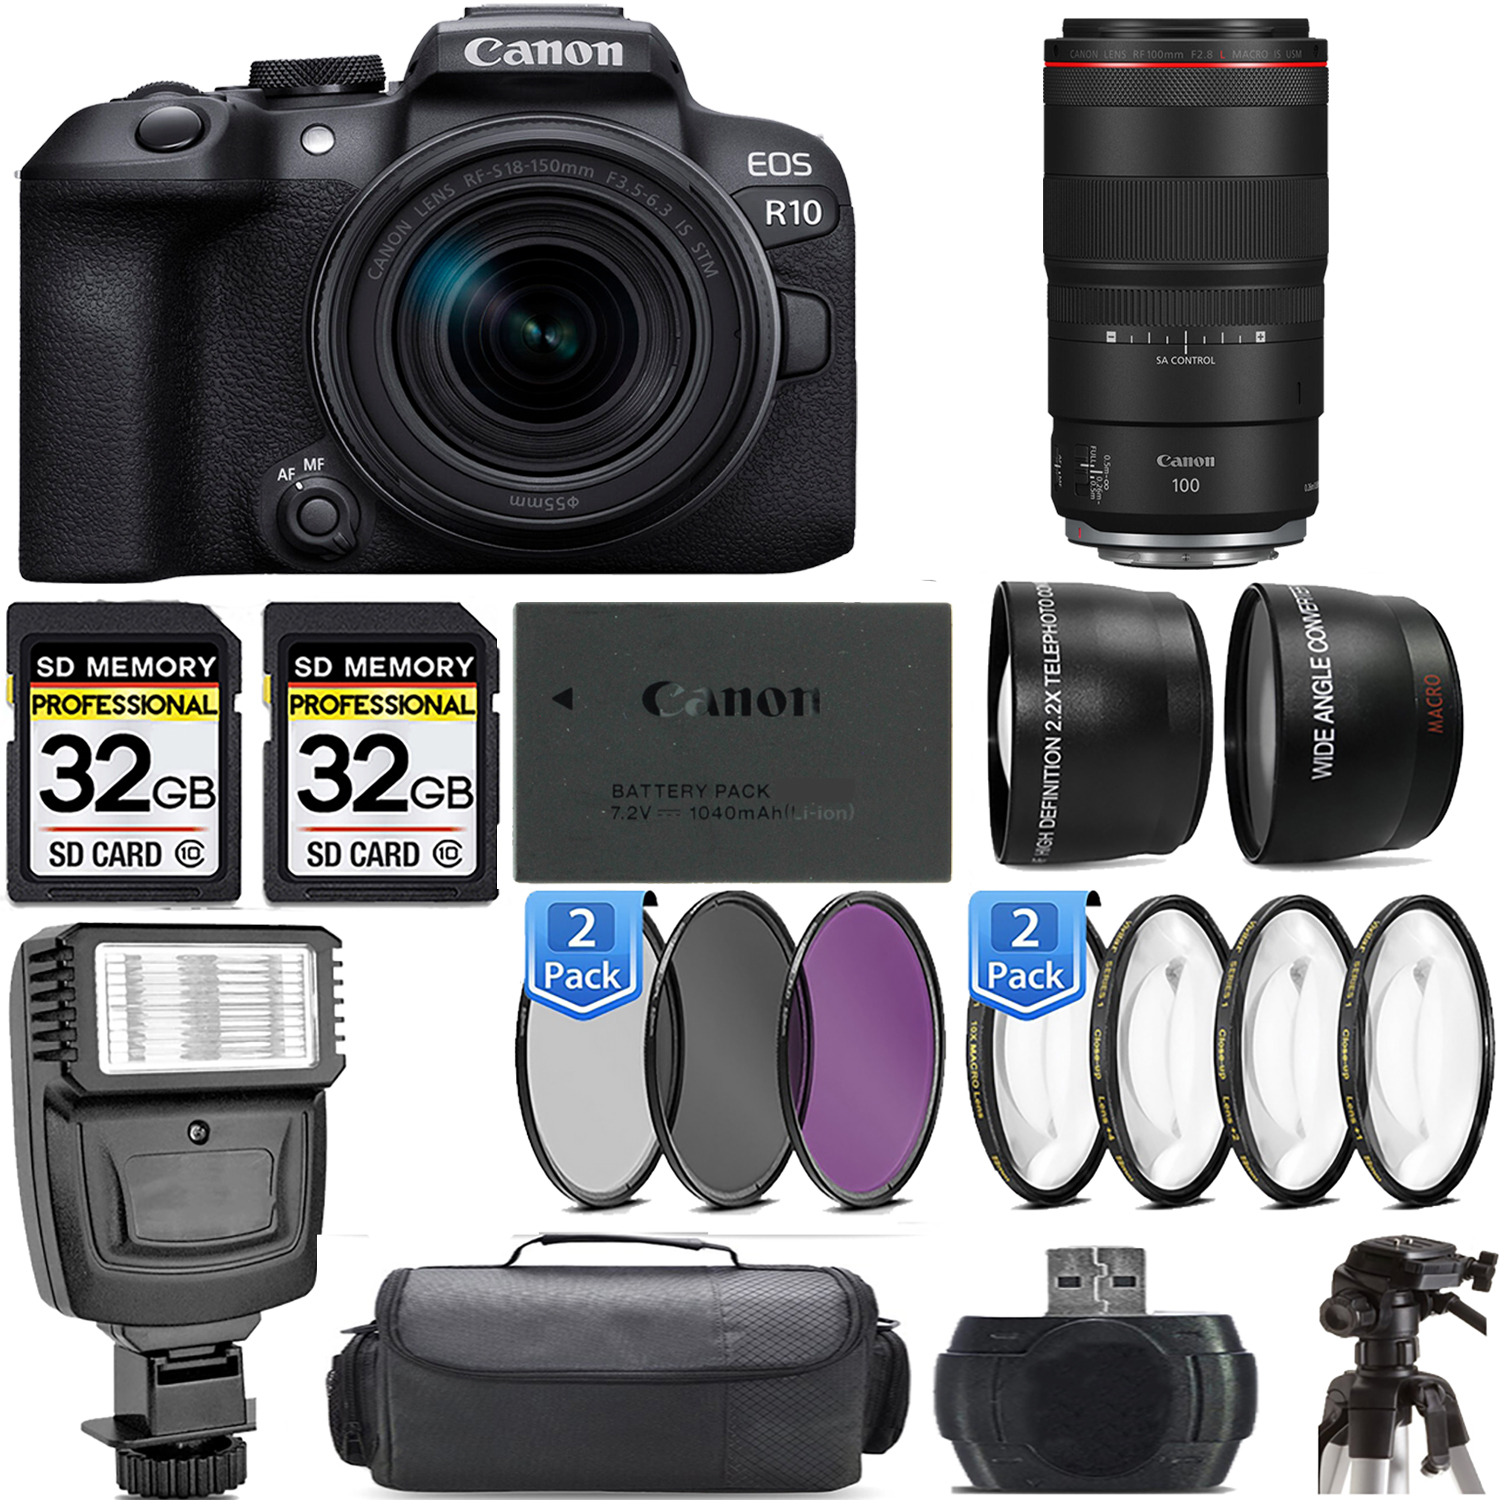 EOS R10 Camera + 18-150mm Lens + 100mm f/2.8 L Macro IS USM Lens + Flash - Kit *FREE SHIPPING*